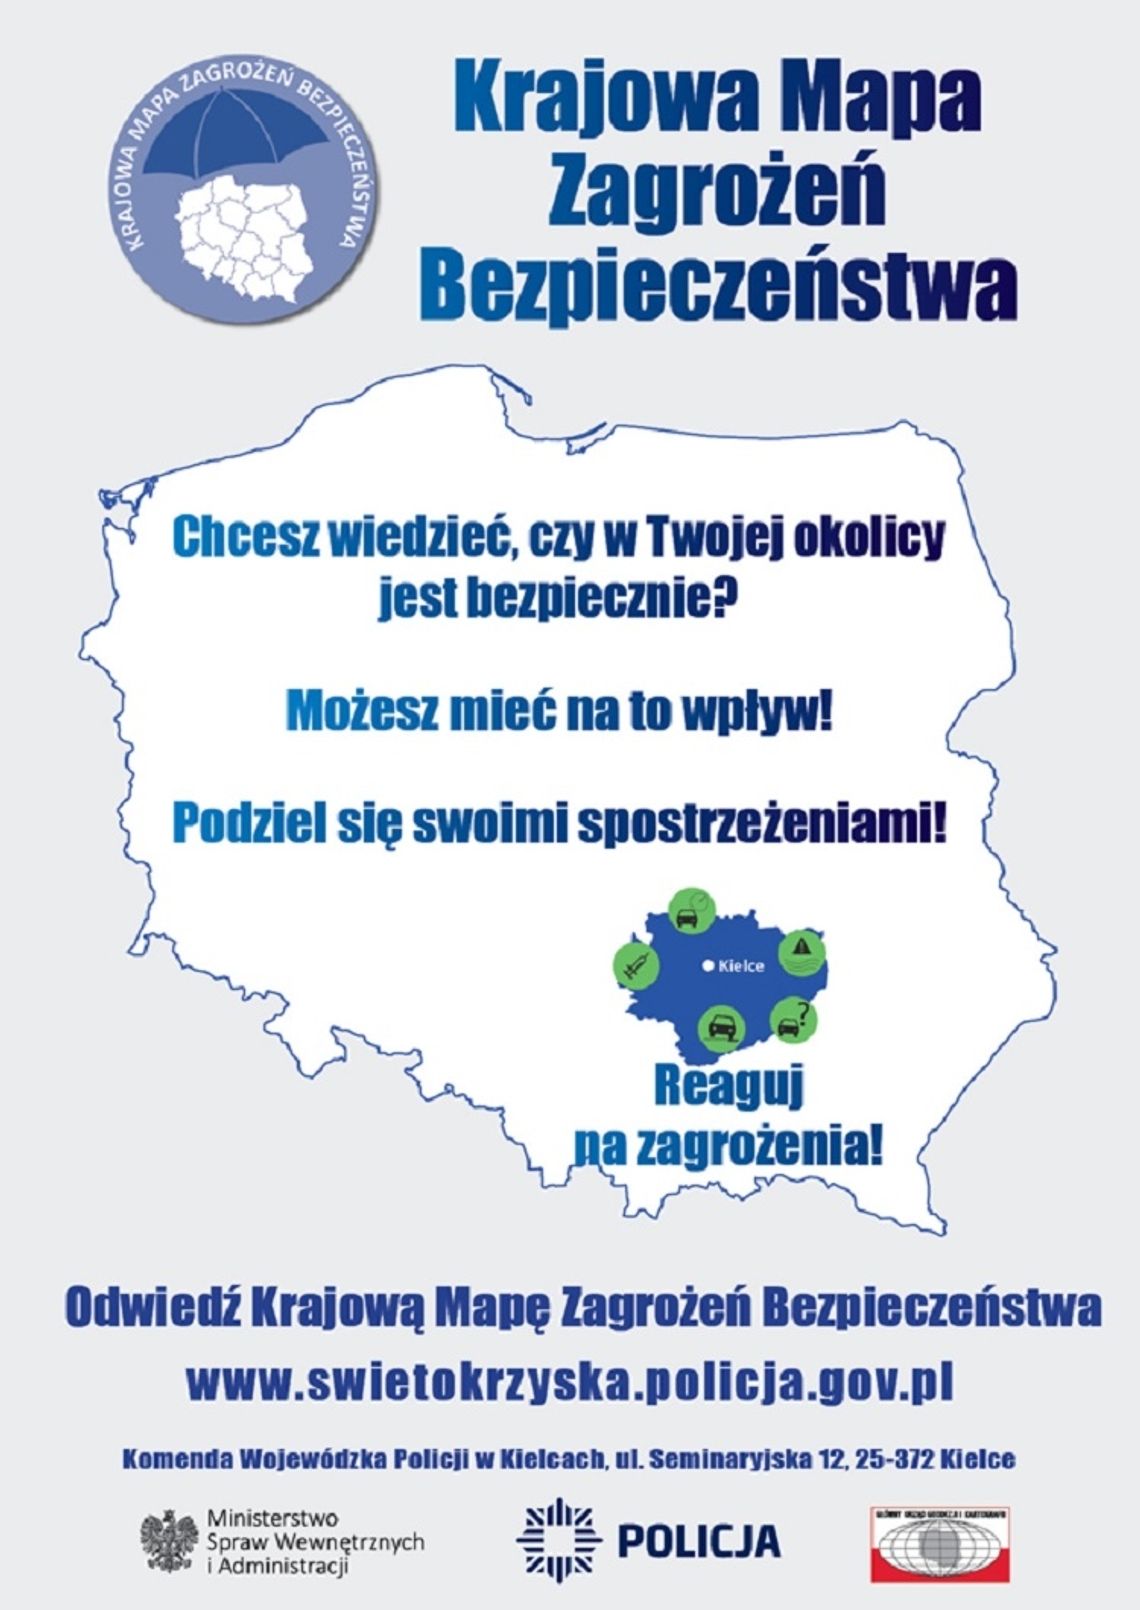 W województwie świętokrzyskim działa Krajowa Mapa Zagrożeń Bezpieczeństwa